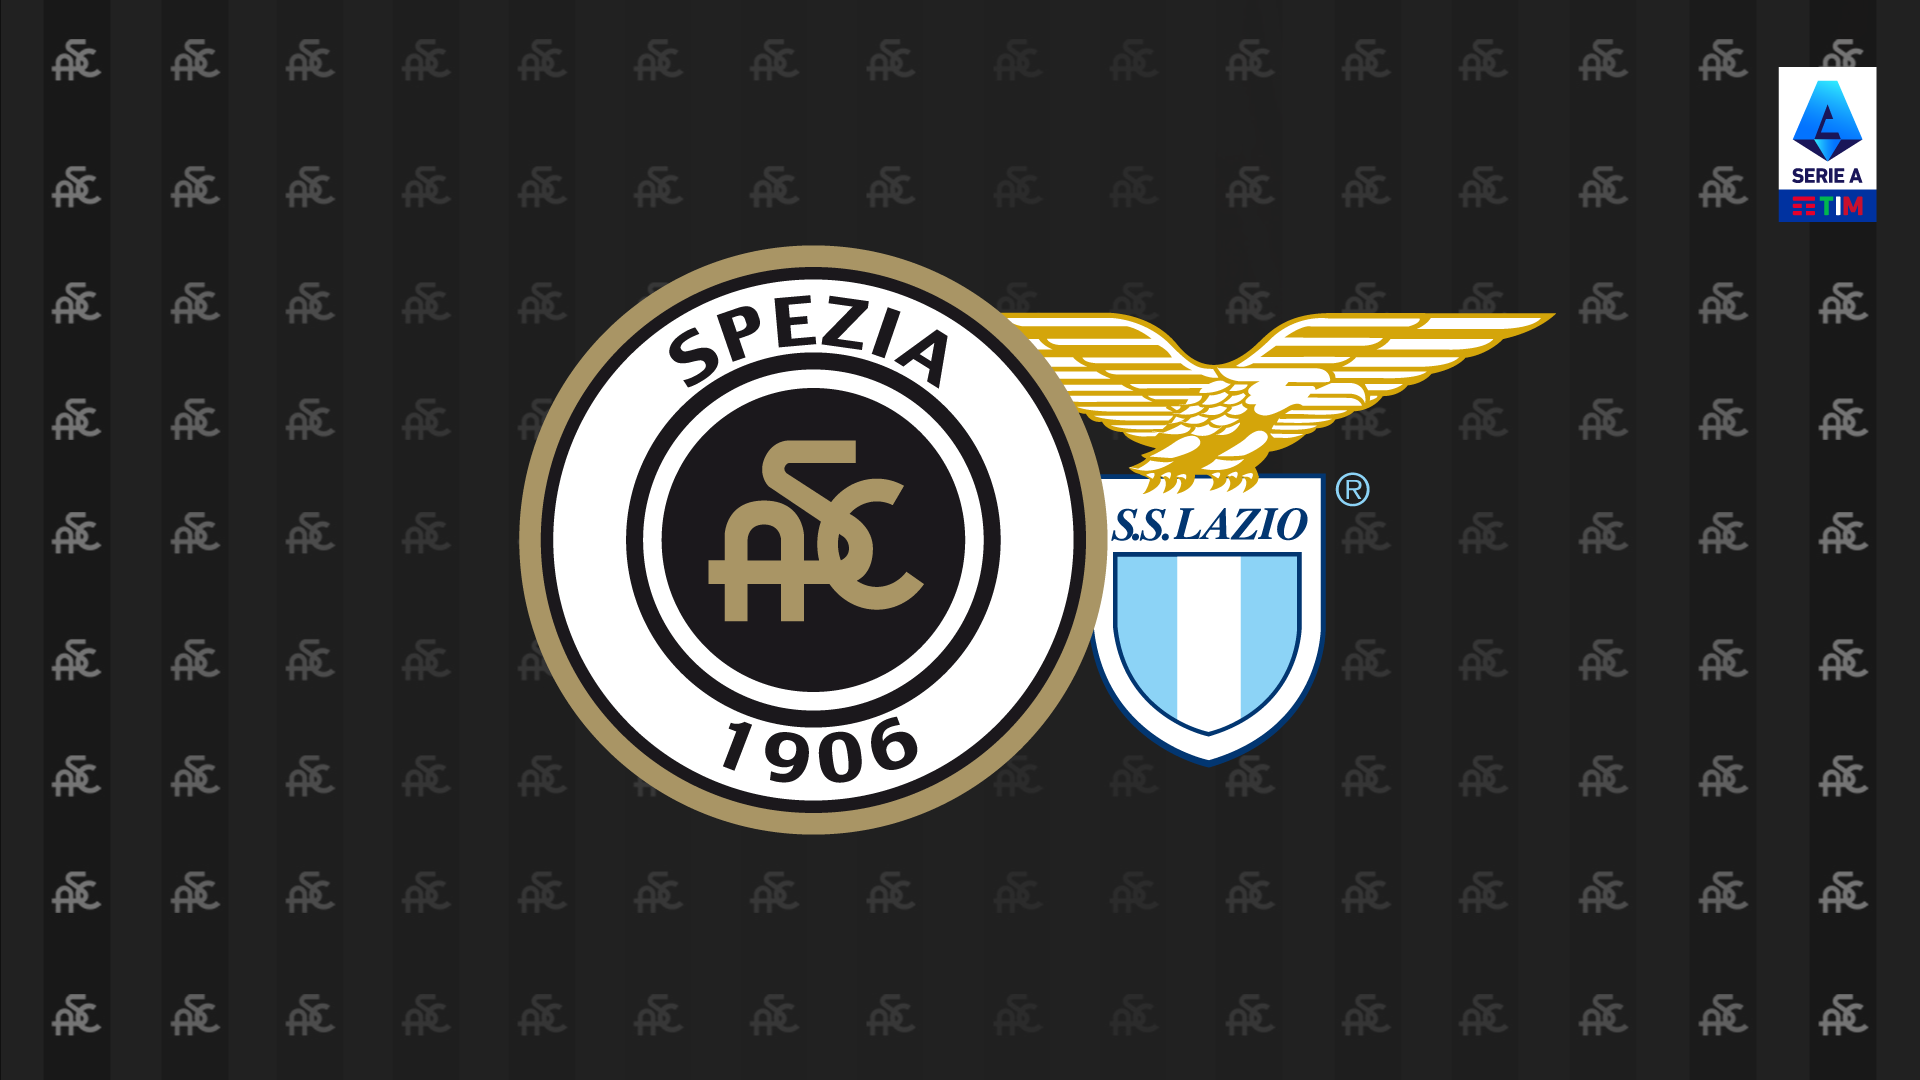 Spezia-Lazio: free sale available from April 26